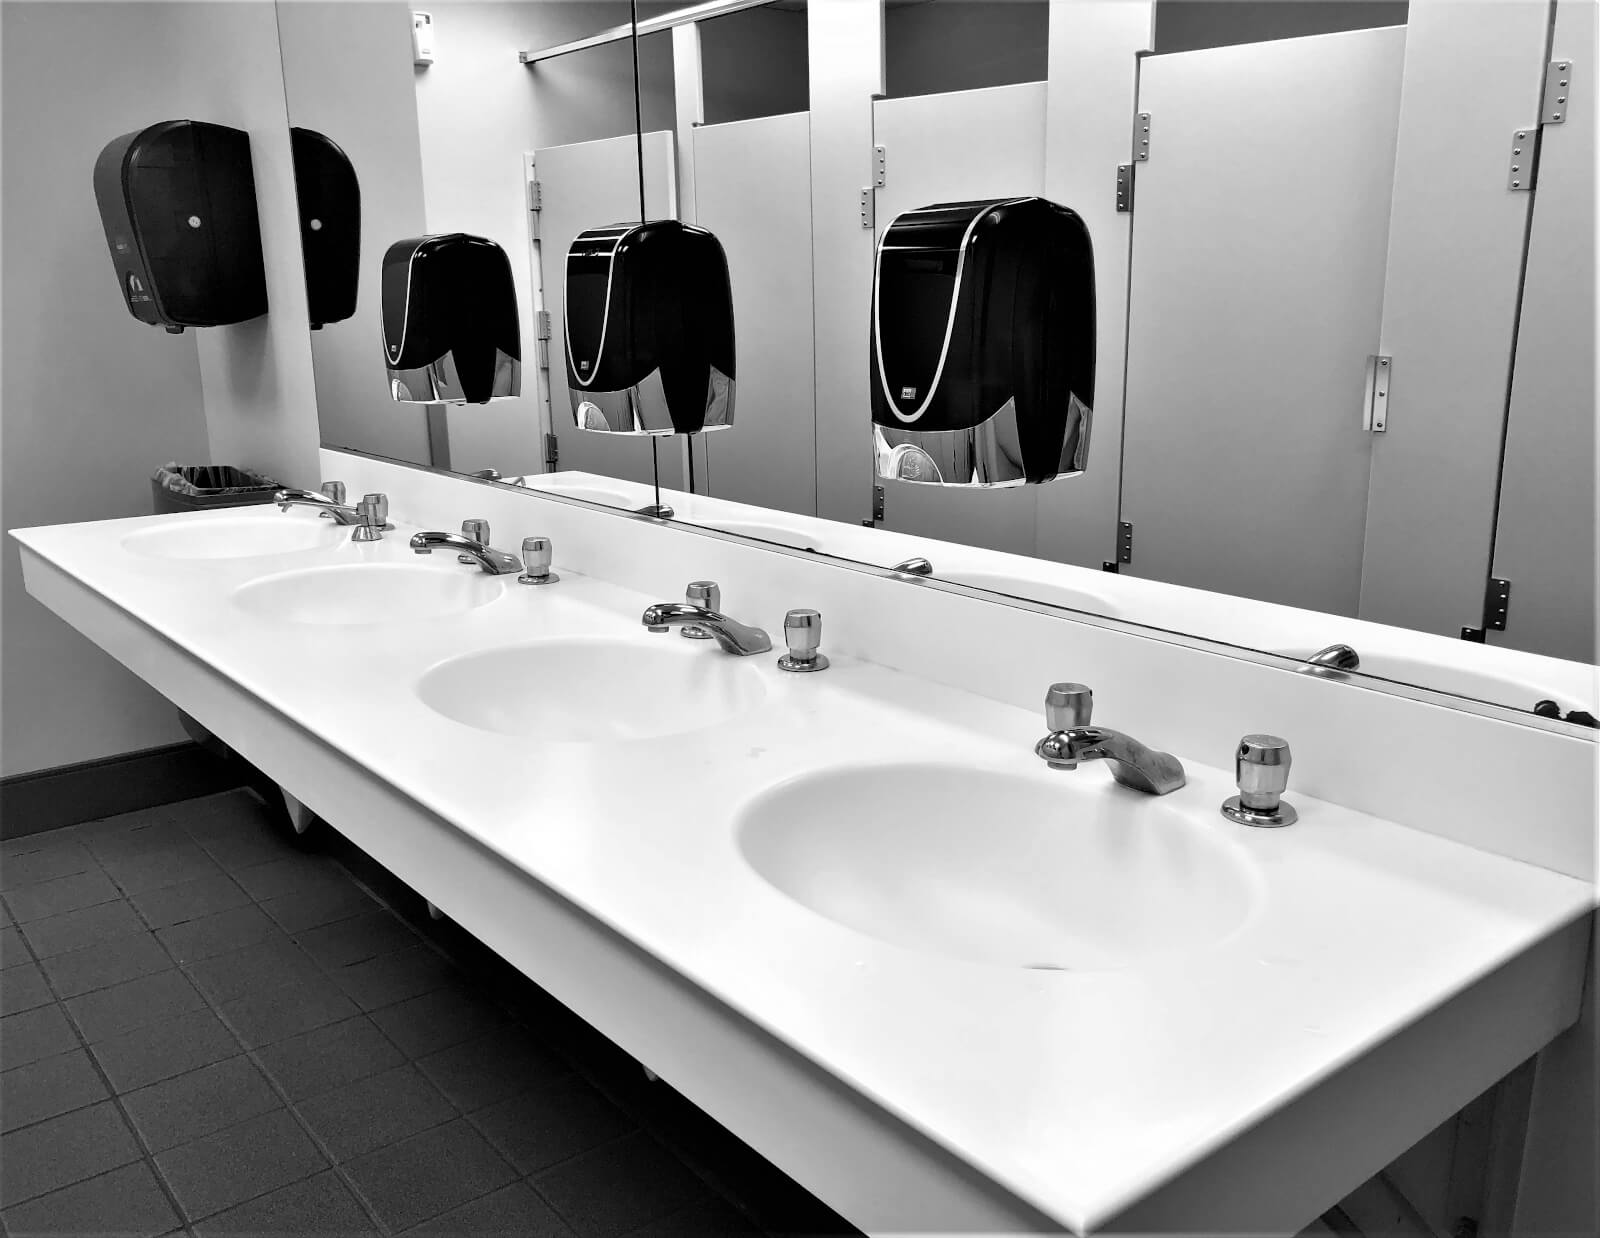 Commercial Plumbing specialist bathrooms